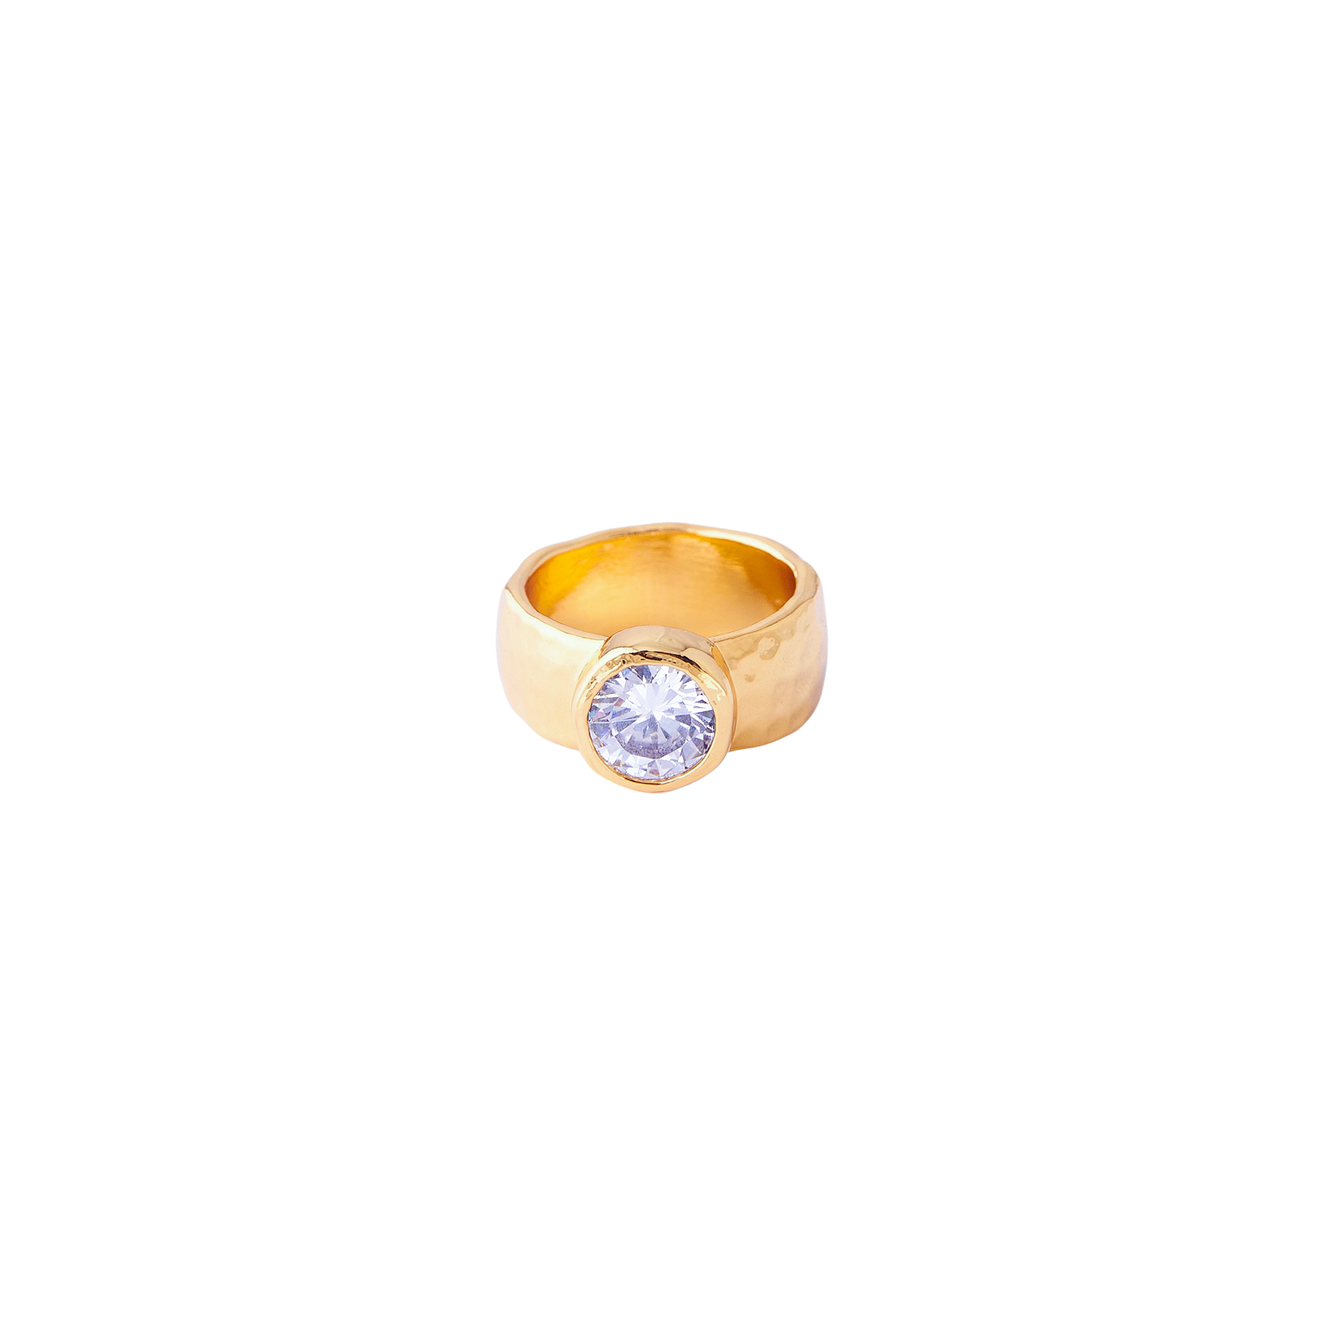 Herald Percy Золотистое кольцо с крупным кристаллом herald percy золотистое фигурное кольцо с черным сердцем